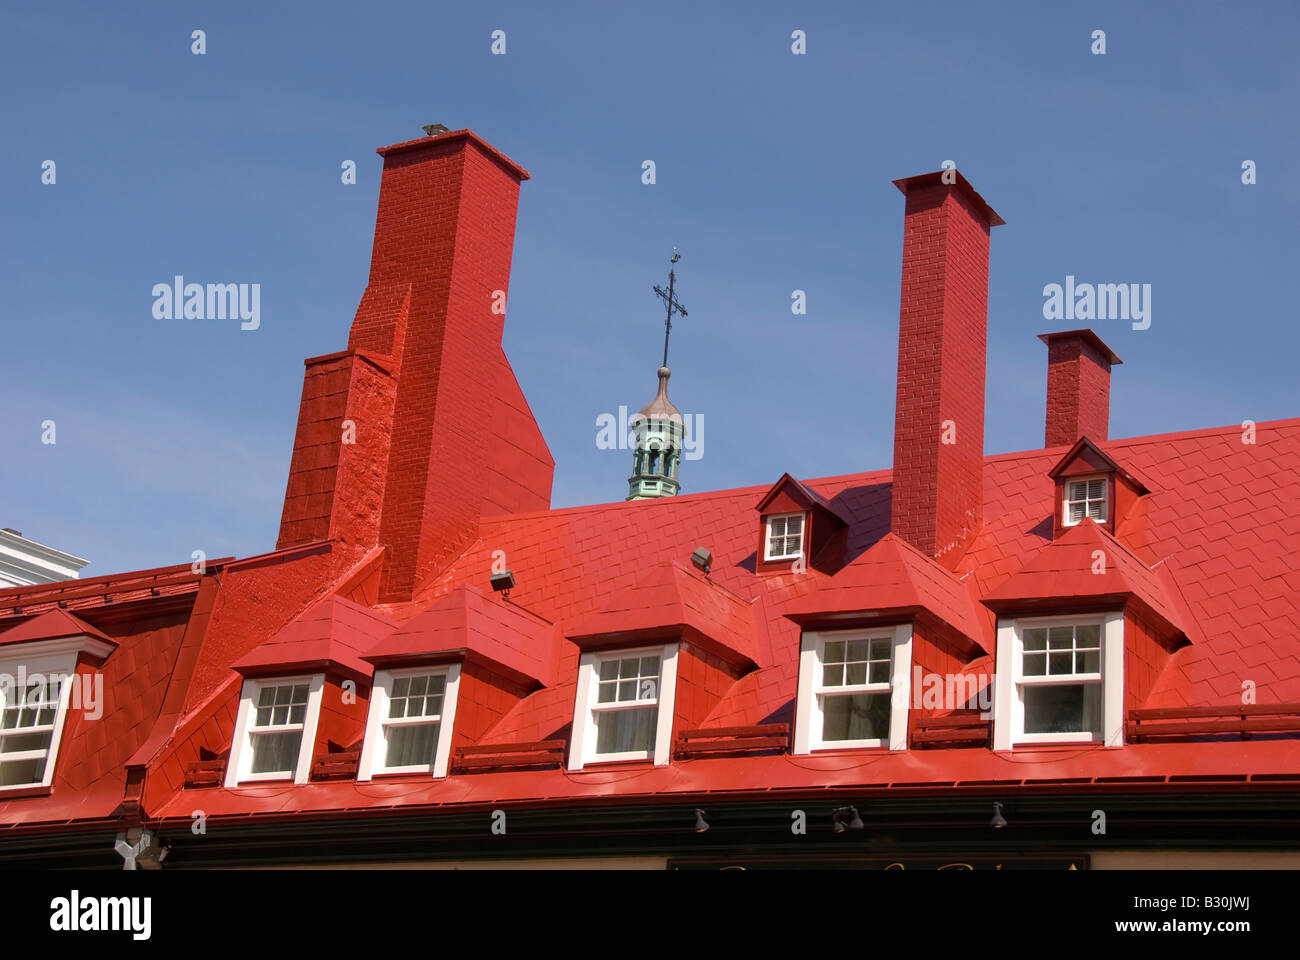 roten Dach und Schornsteine traditionelle französische Architektur in Québec Kanada Vieux Québec, der historischen Altstadt Stockfoto